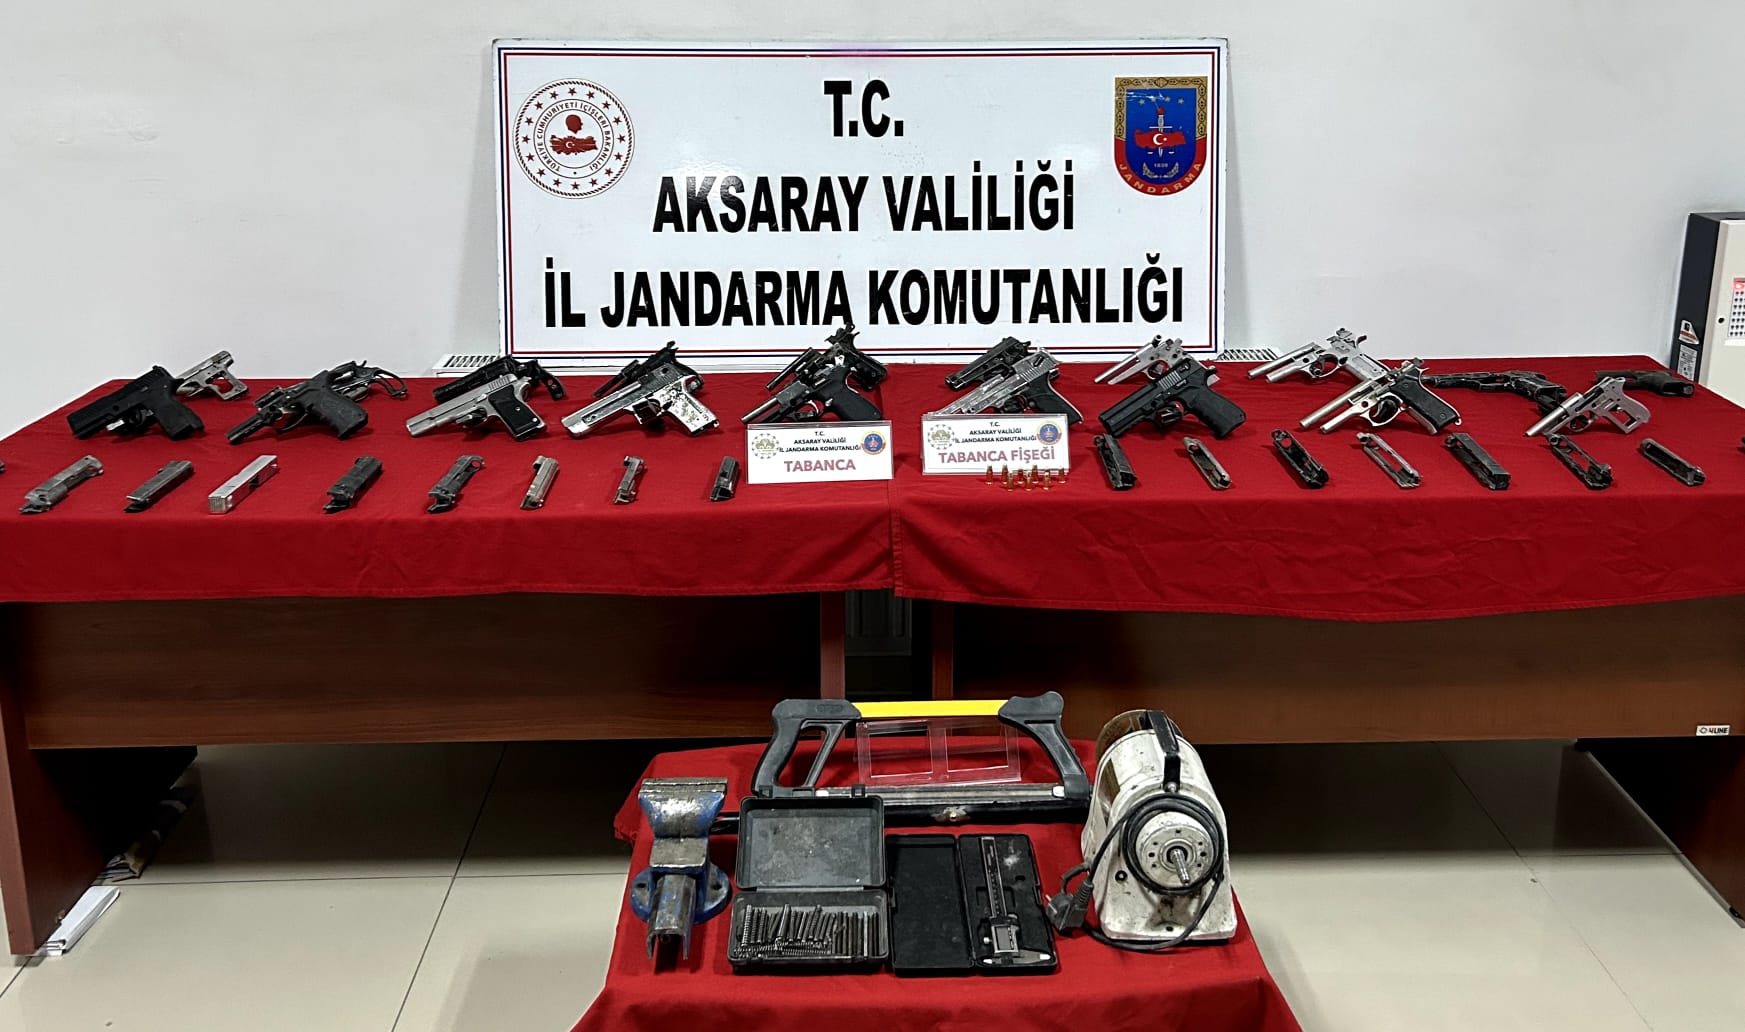 Aksaray’da Kaçak silah yapım atölyesi basıldı 1 kişi tutuklandı